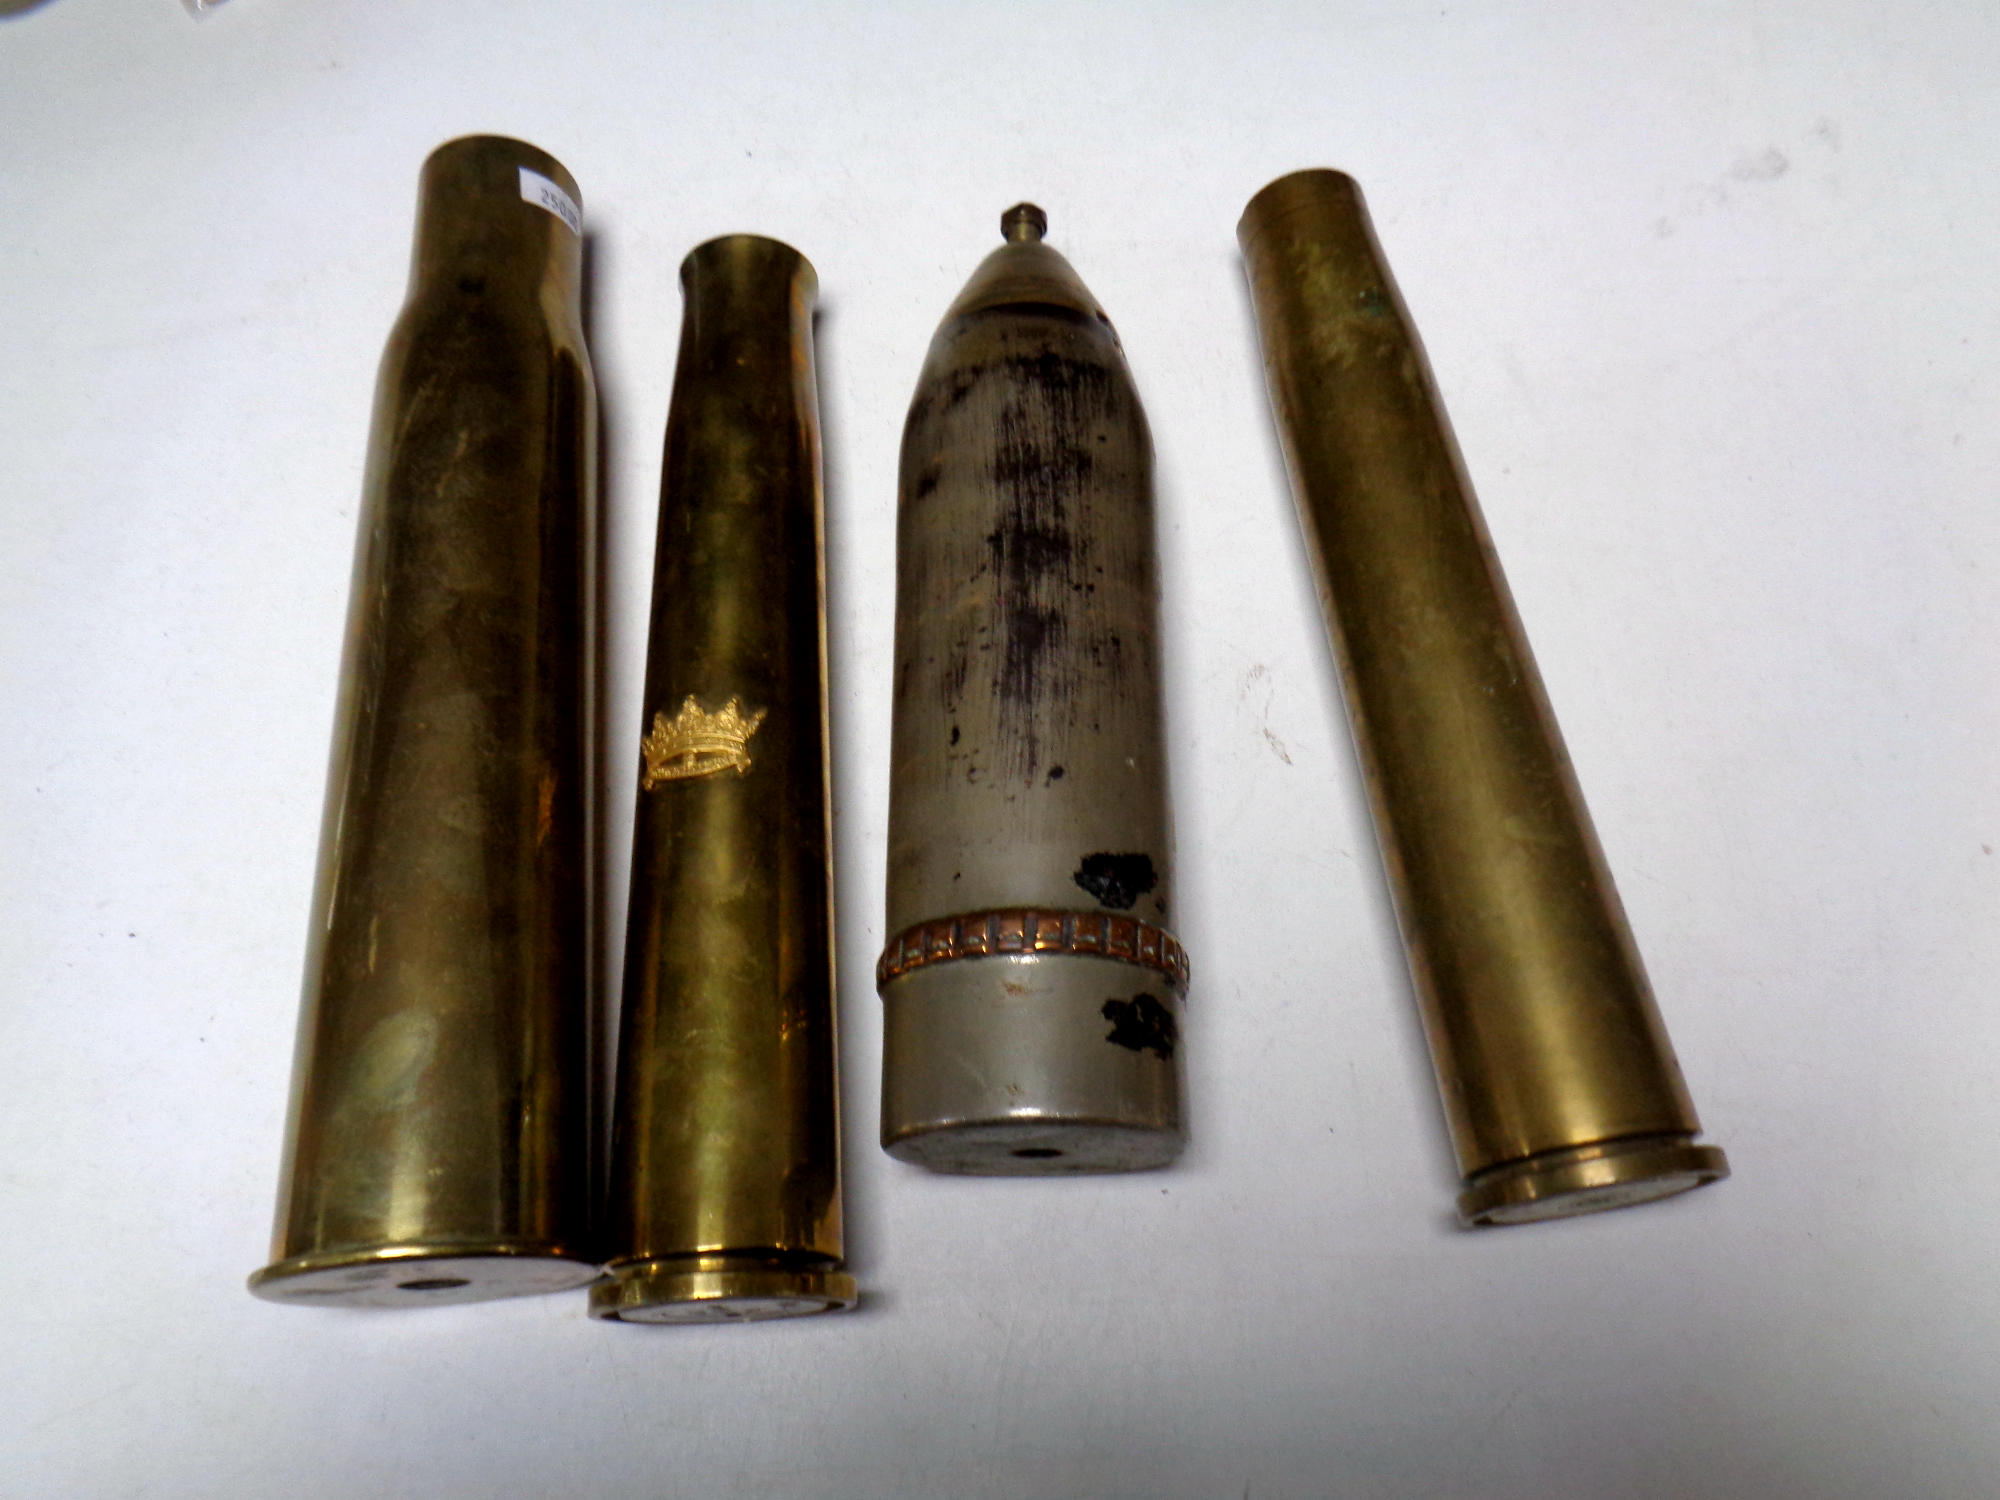 Four brass ammunition shells